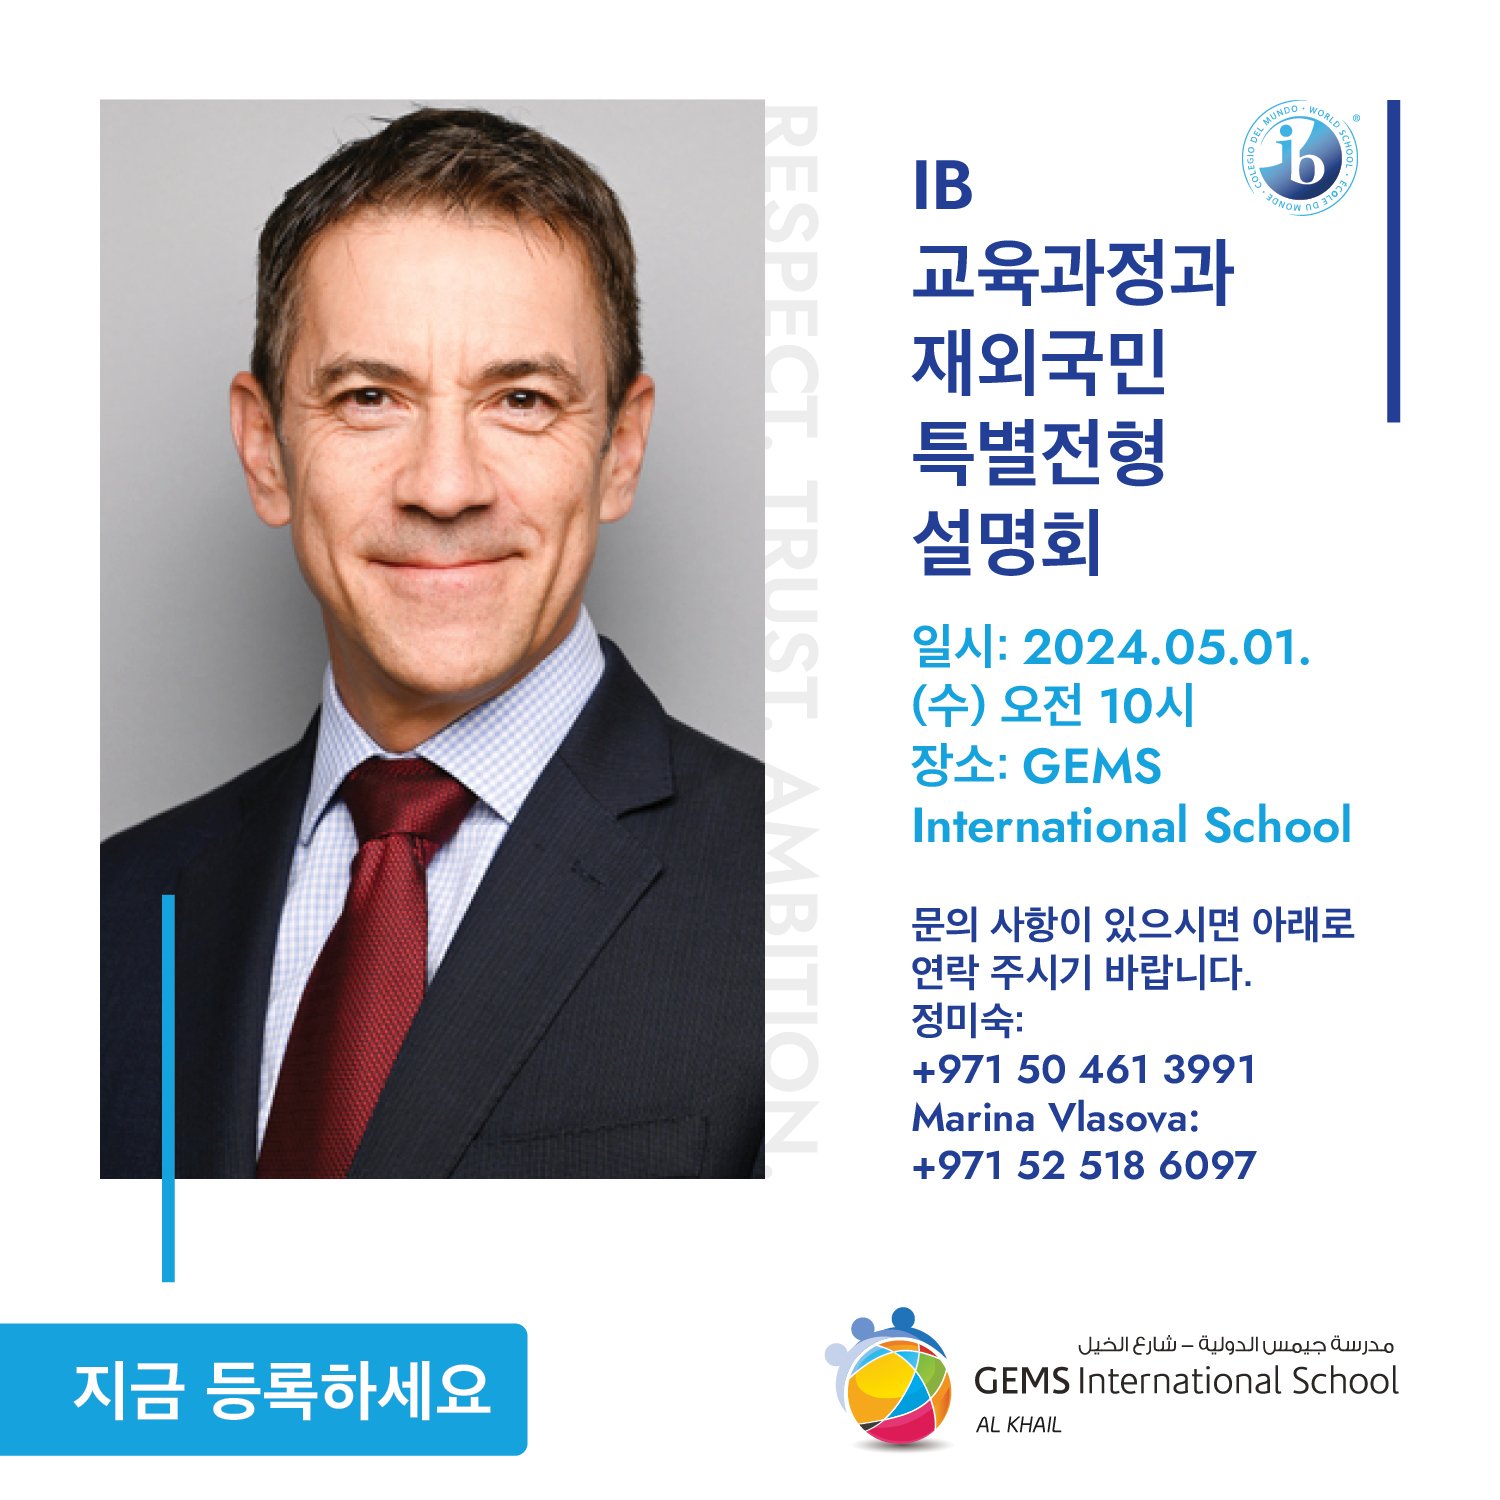 Exploring IB Curriculum and Korean University Admissions